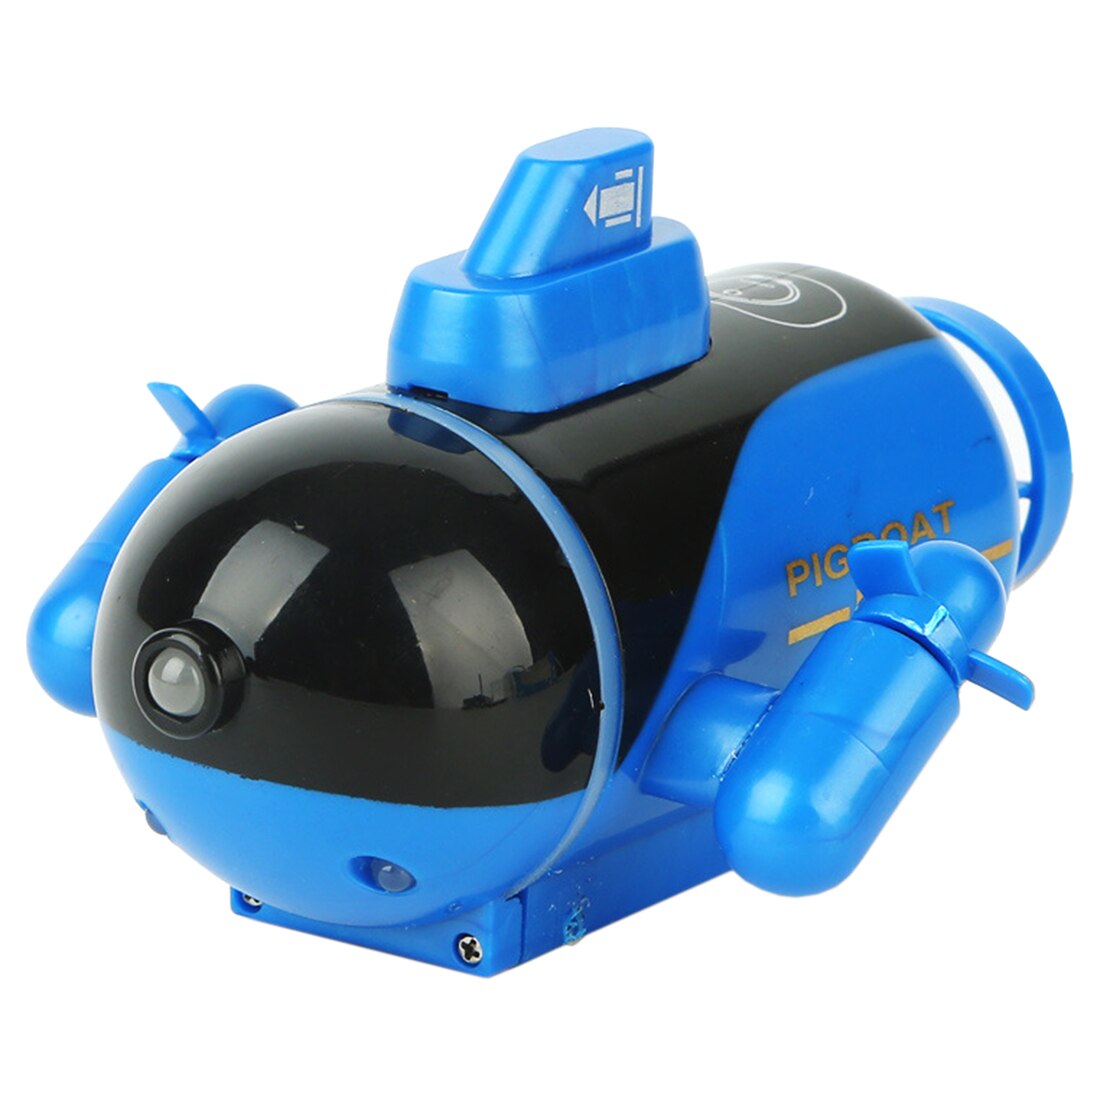 4 kanalen 40 MHz/27 MHZ Waterdichte Draadloze RC Boot Mini RC Boot Model RC Duiken Elektrische Speelgoed voor kinderen-Blauw